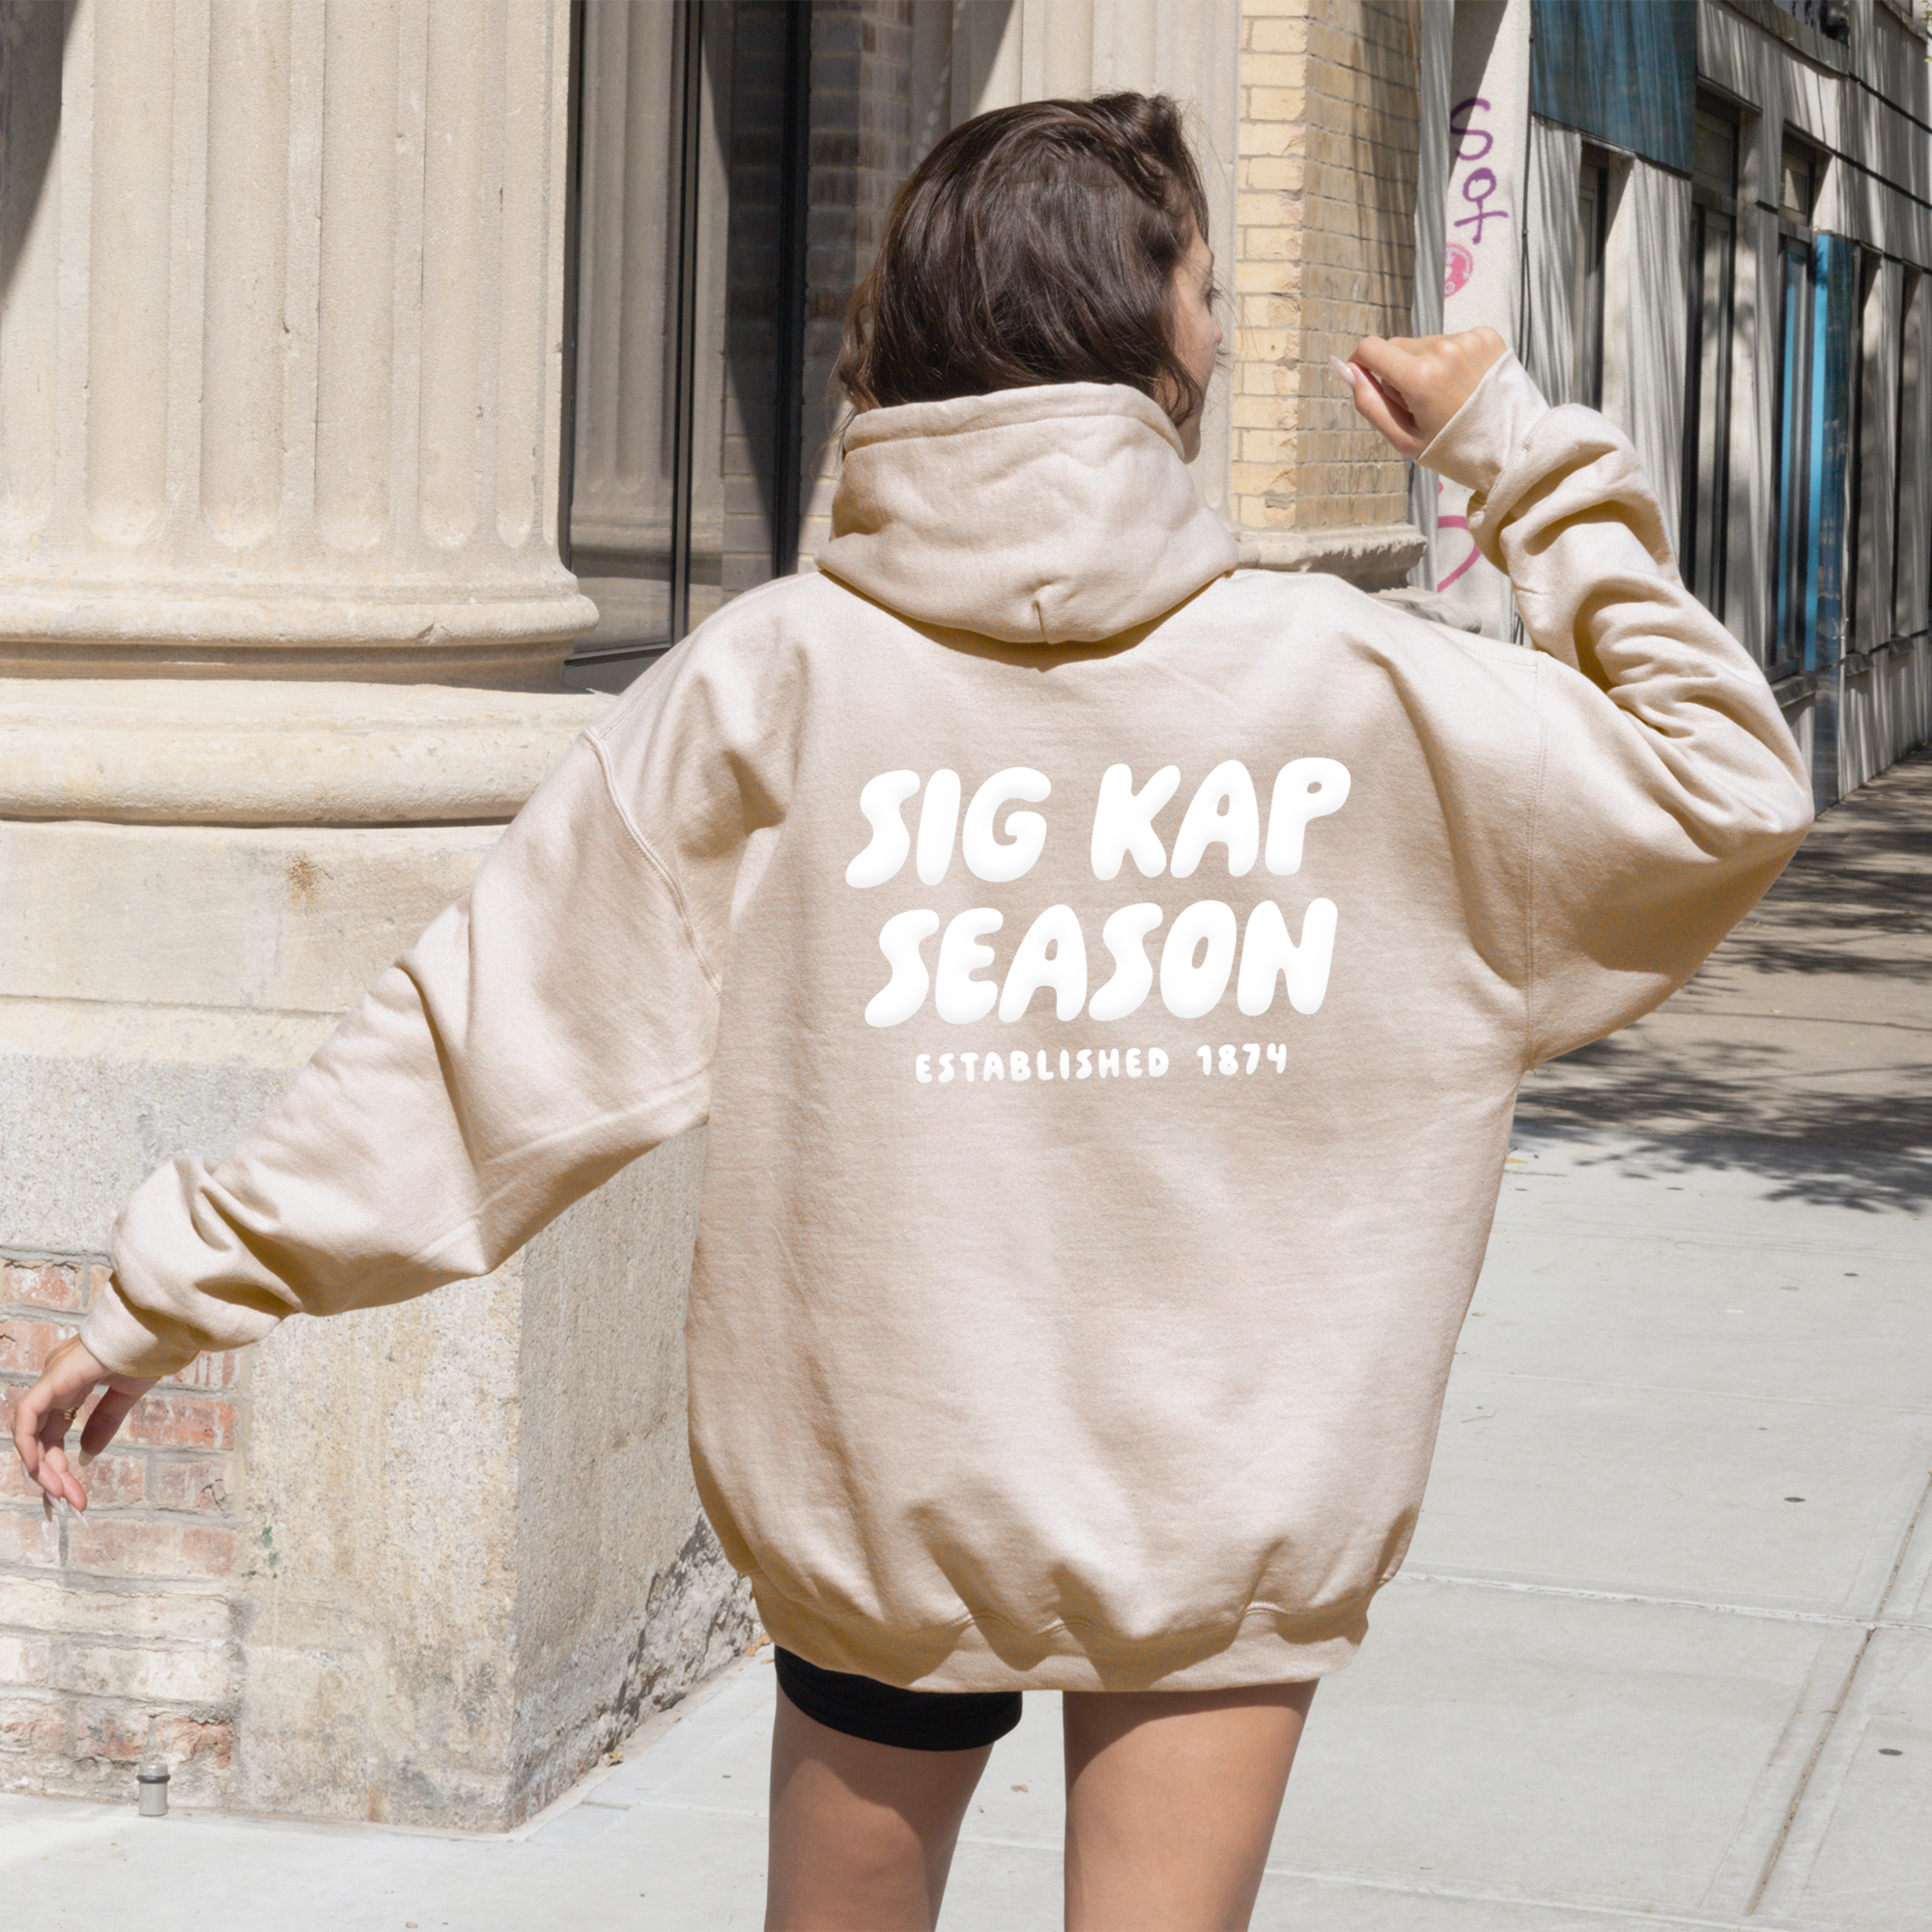 Sigma Kappa Tan Hoodie with Puff Design - Foxy Season